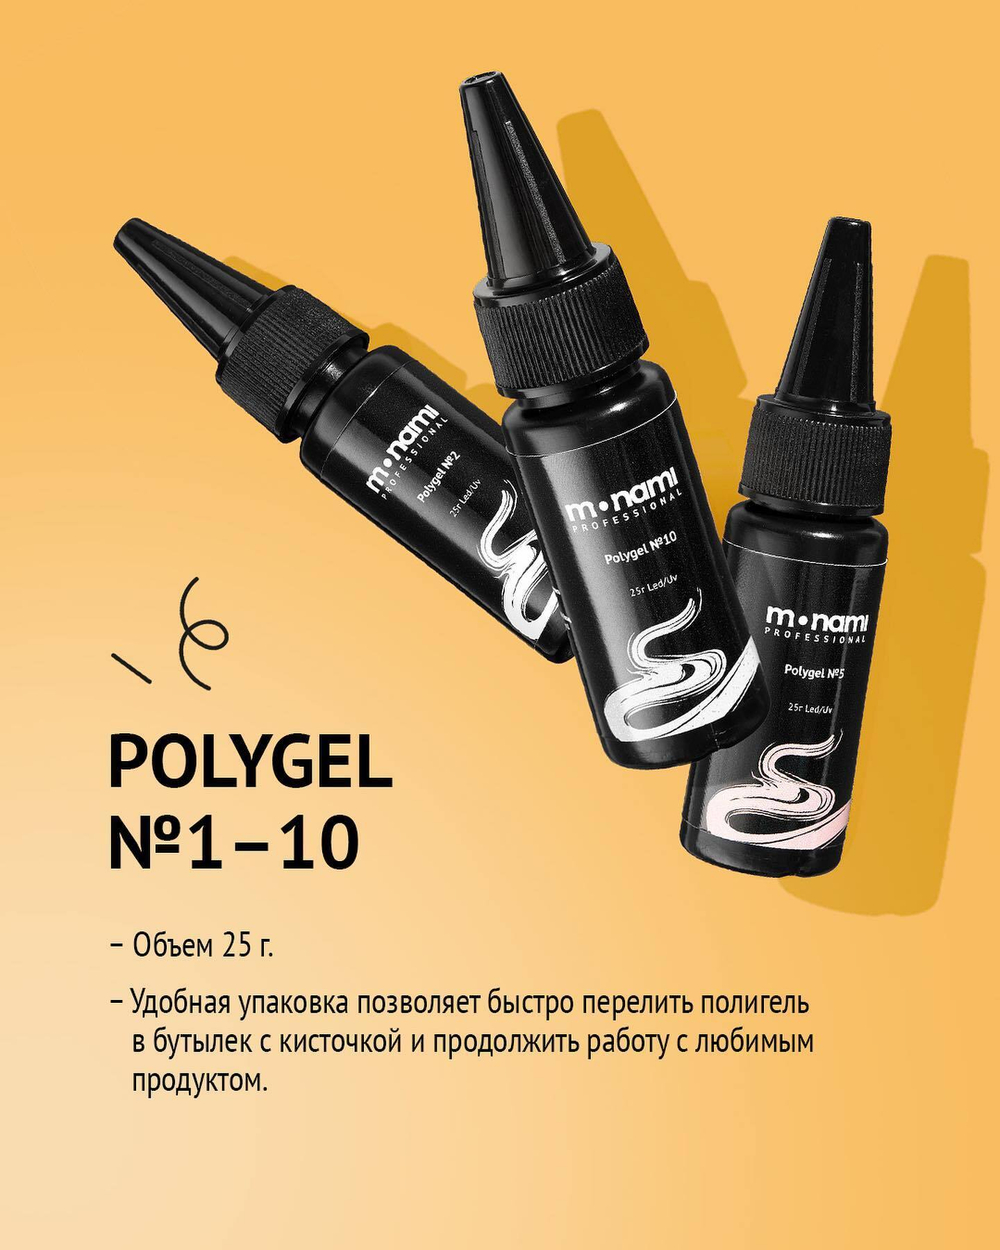 Жидкий полигель MONAMI Liquid PolyGel 09,25 г